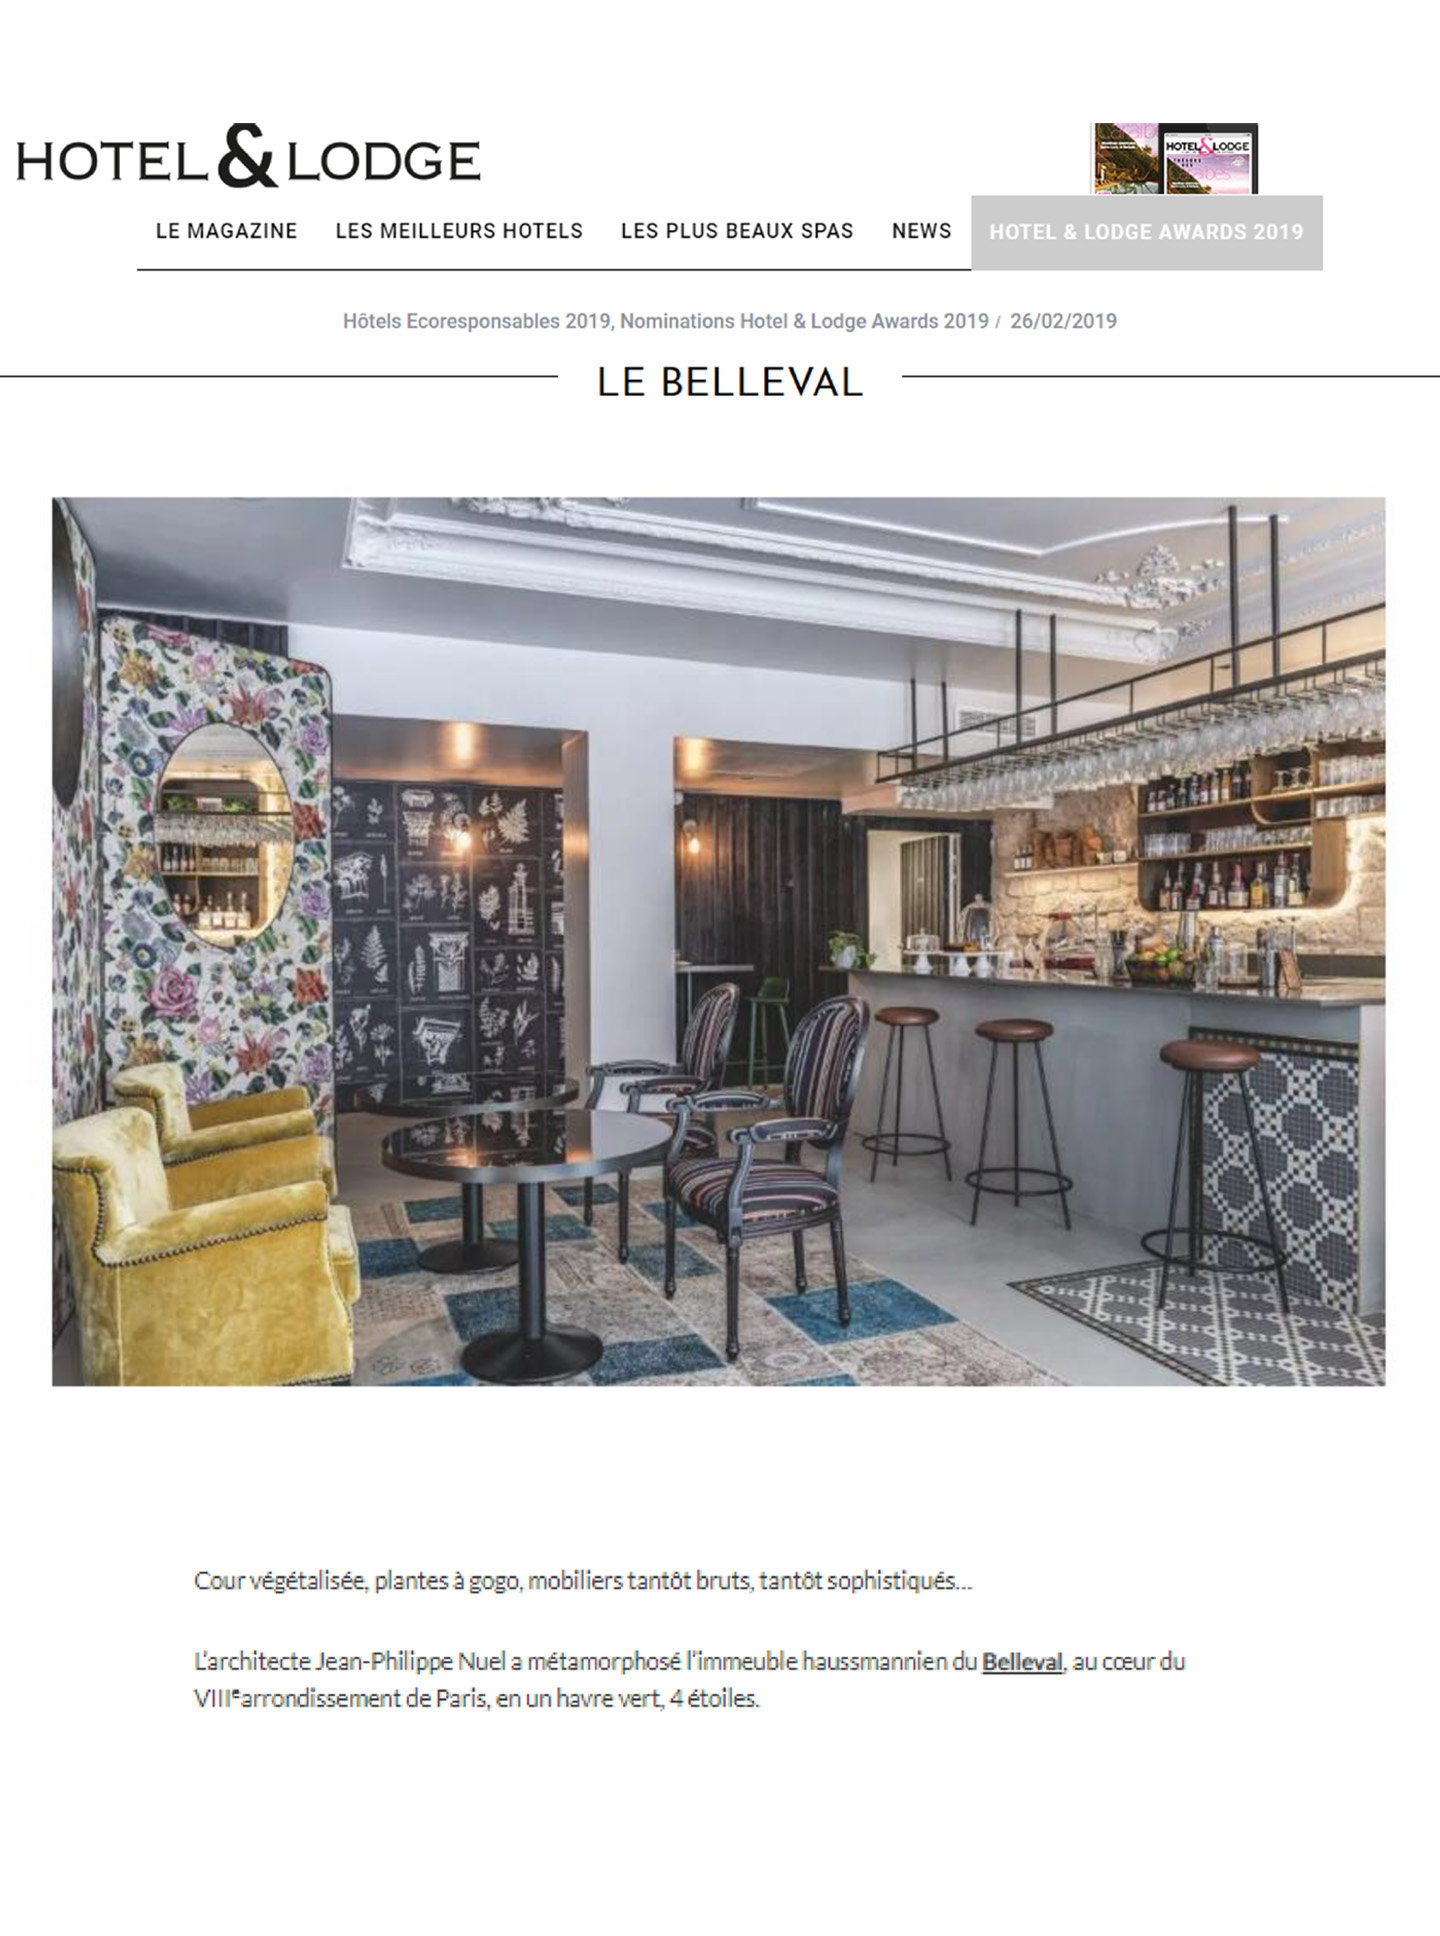 article sur l'hôtel de luxe haussmannien Le Belleval designé par l'architecte et décorateur d'intérieur Jean-Philippe Nuel